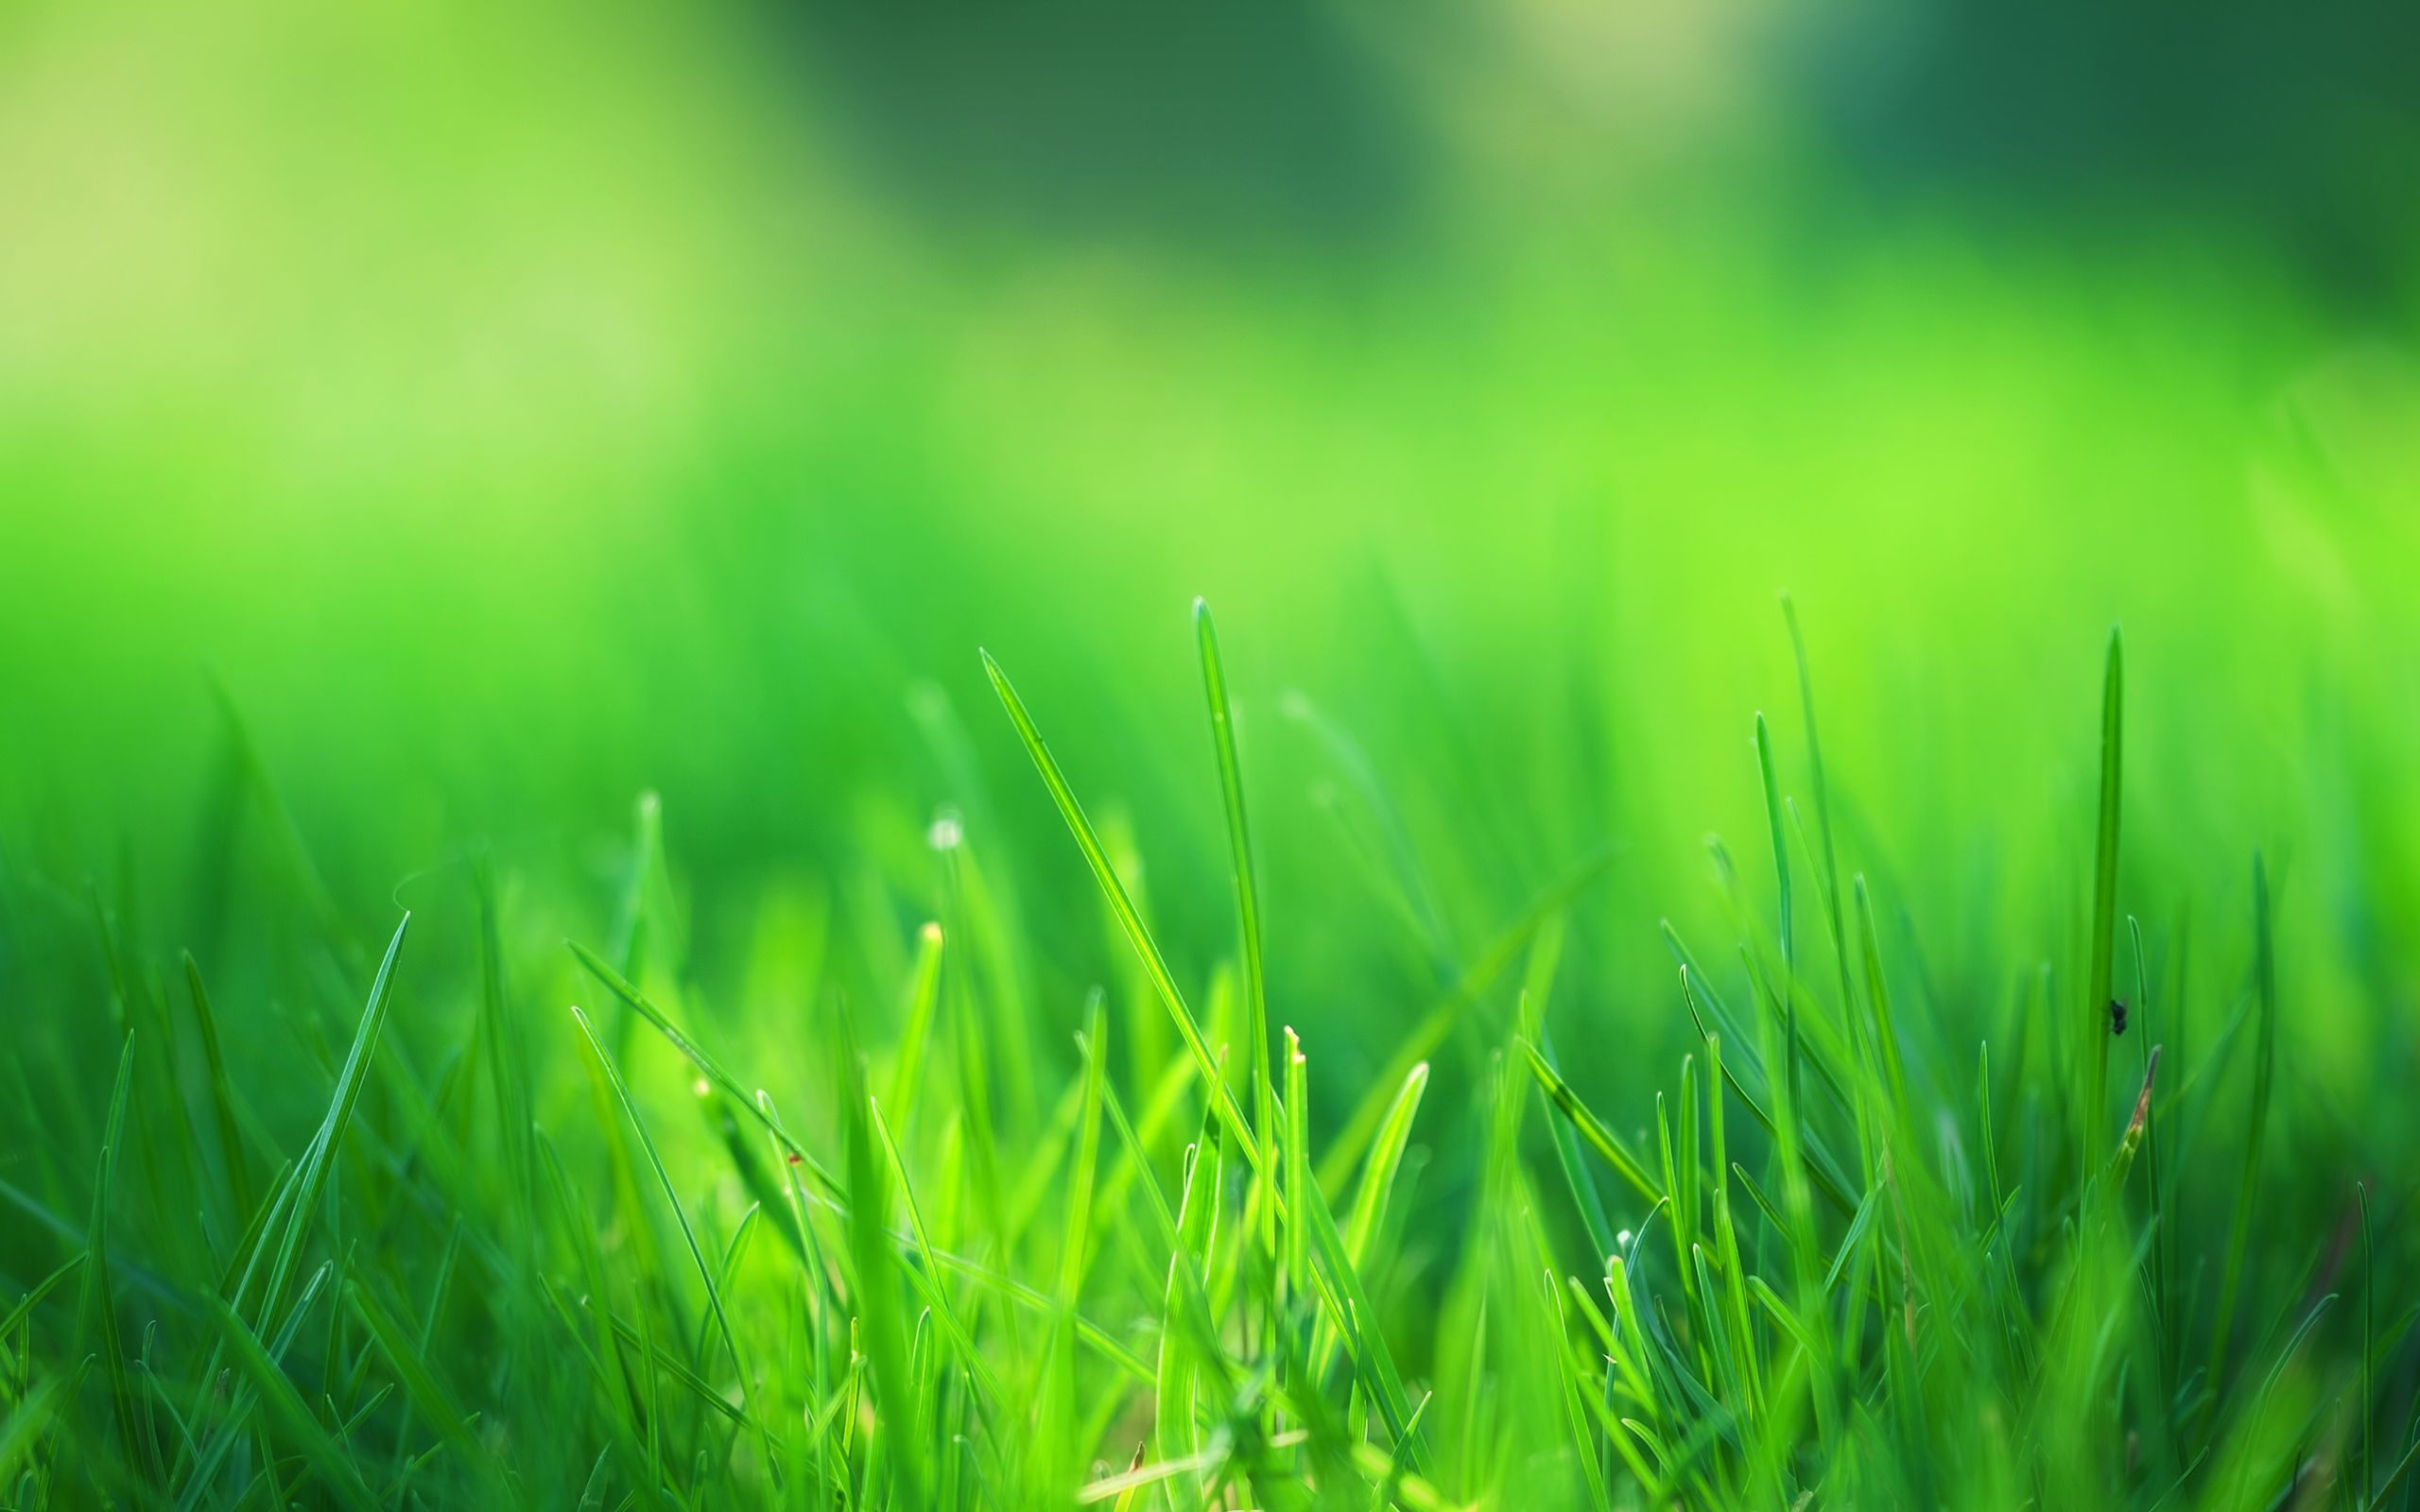 Hình nền cây cỏ - những bức hình đẹp lung linh với những thảm cỏ xanh mướt sẽ khiến bạn vô cùng thích thú. Hãy cùng thưởng thức những khung cảnh thiên nhiên tuyệt đẹp và cảm nhận sự tươi mới của tự nhiên.